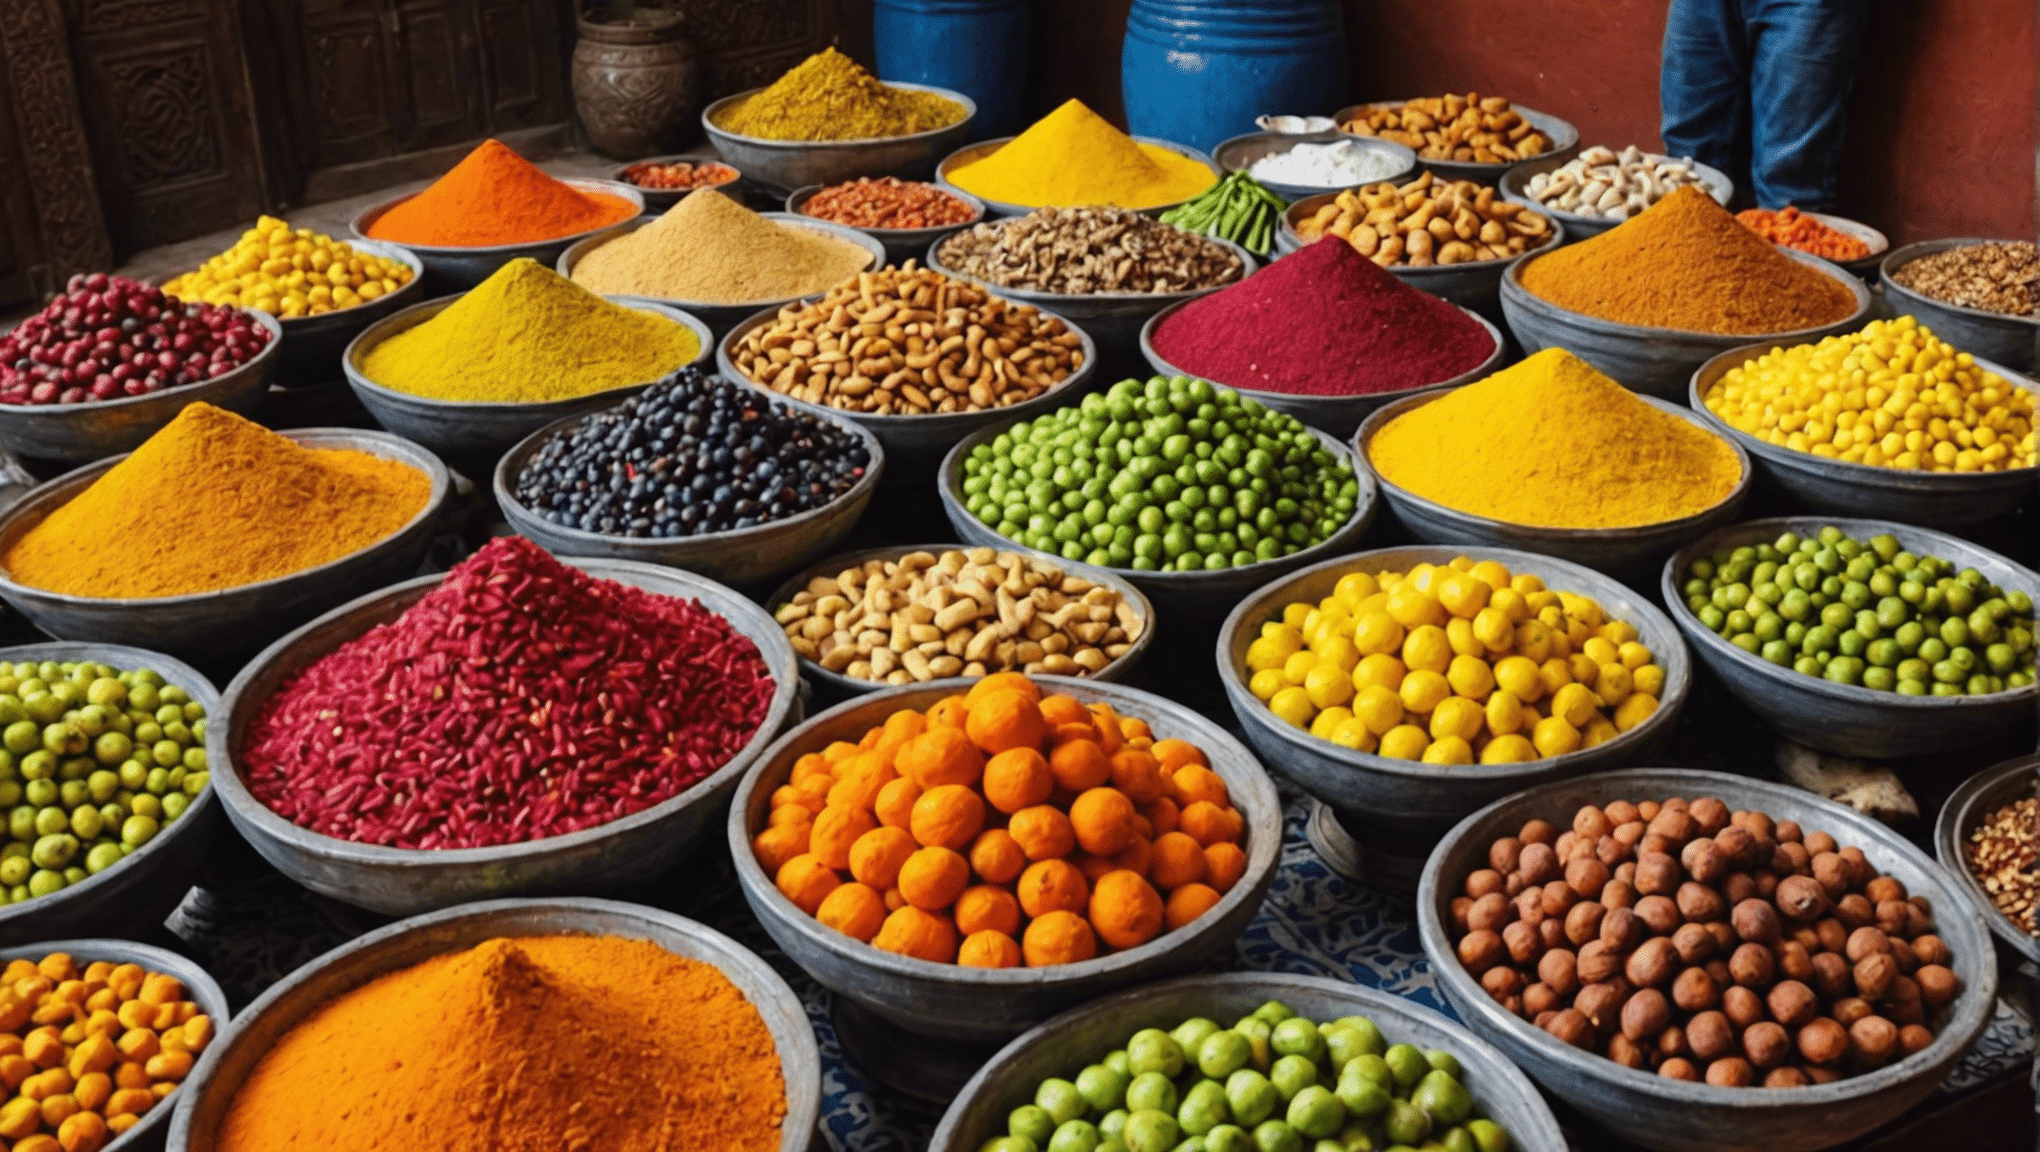 offrez-vous les délices les plus exotiques de Marrakech et testez votre courage avec des expériences culinaires uniques. découvrez le gourmand intrépide qui est en vous !